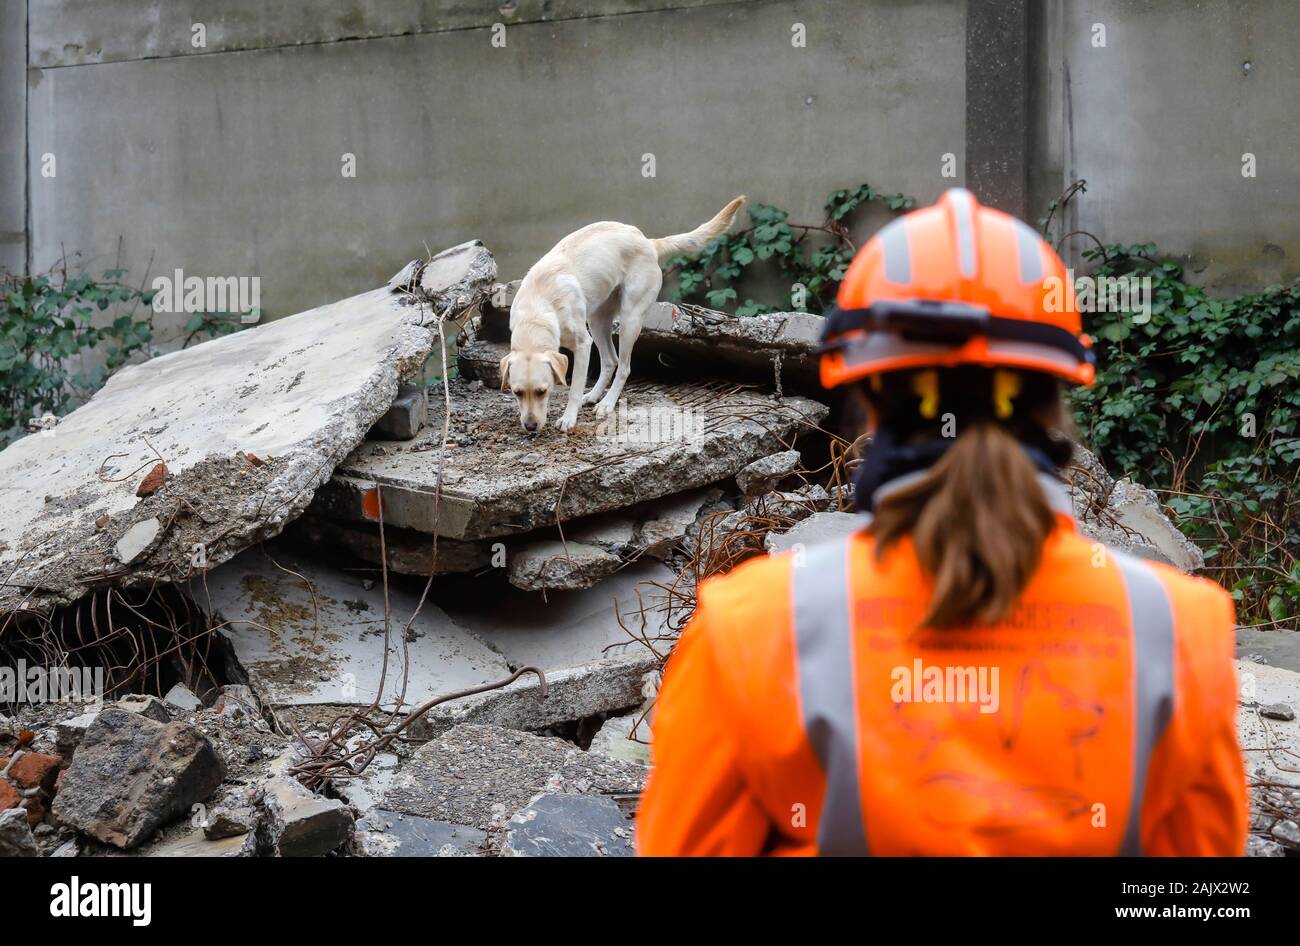 Herne, Nordrhein-Westfalen, Deutschland - Rescue Dog Training, in Trümmern von eingestürzten Gebäuden, die tracking Hunde Praxis die Suche nach verletzten, buri Stockfoto